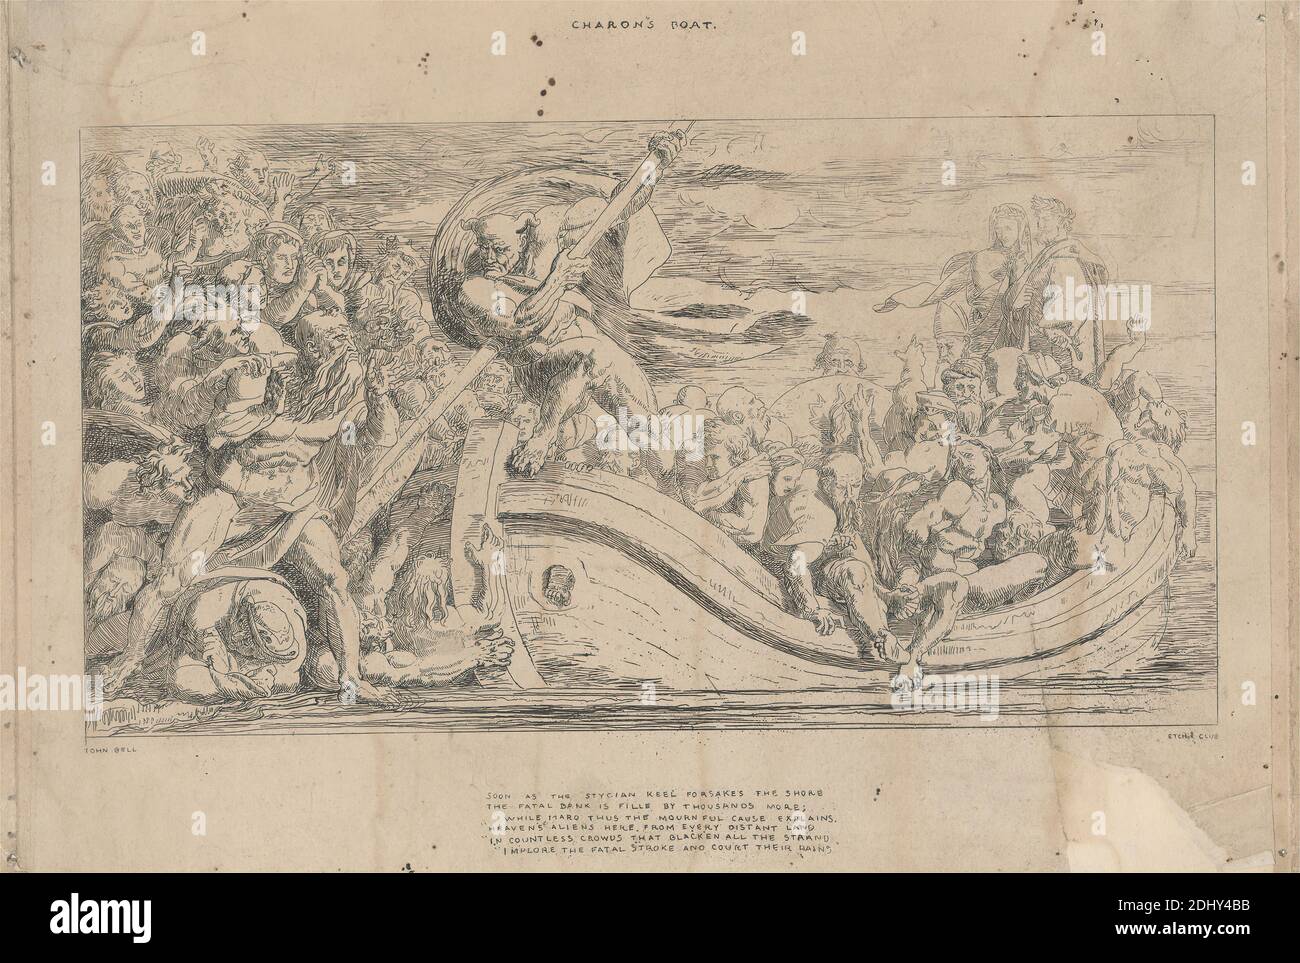 Charon's Boat, imprimé par John Bell, 1811–1895, British, entre 1838 et 1850, Etching sur du papier vélin beige modérément épais, légèrement texturé, avec un collage de chine crème, feuille: 8 3/8 x 12 1/2 pouces (21.2 x 31.8 cm), plaque: 8 3/8 x 12 1/16 pouces (21.2 x 30.6 cm), et image: 5 13/16 x 10 11/16 pouces (14.7 x 27.2 cm), agonie, mendicité, bateau, nuages, mort, enfer, hommes, mythologie, gens, pleurage, sujet religieux et mythologique, rivière, âmes, personnel, Styx, torture, femmes Banque D'Images